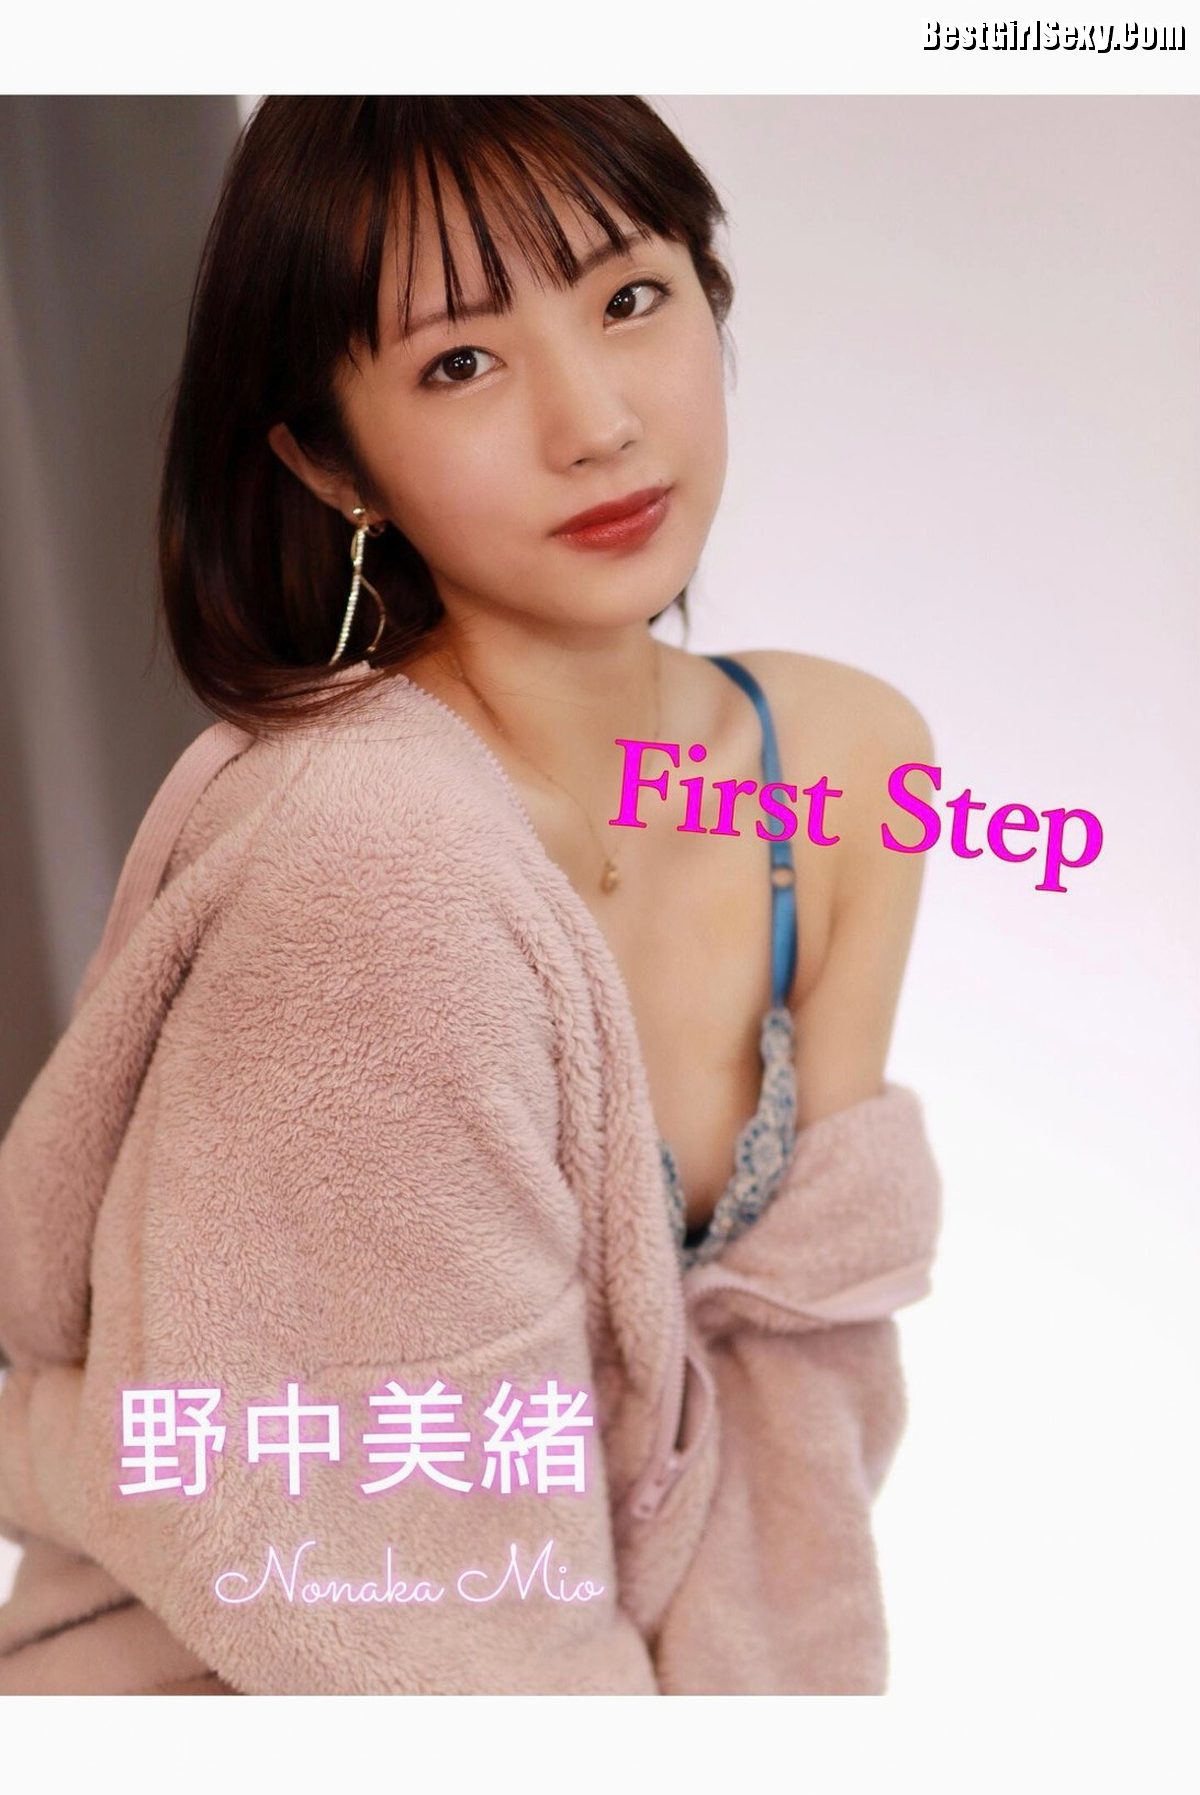 Nonaka Mio 野中美緒 First Step 0004 7010334866.jpg